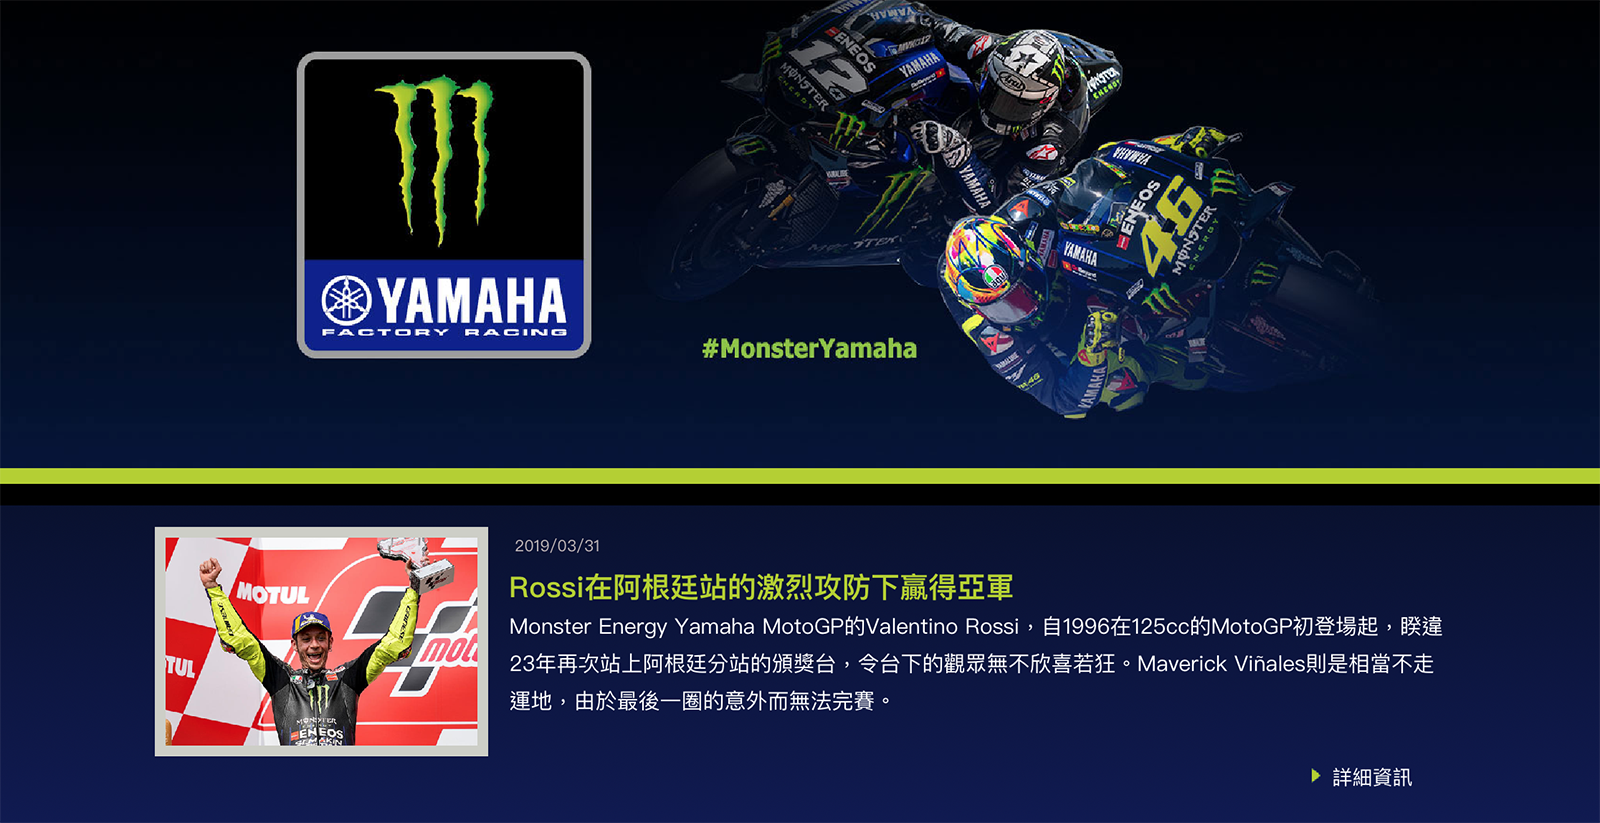 該頁面下方也有許多YAMAHA MotoGP賽事的第一手報導，幾乎可以斷定這是一輛與MotoGP有關的車款